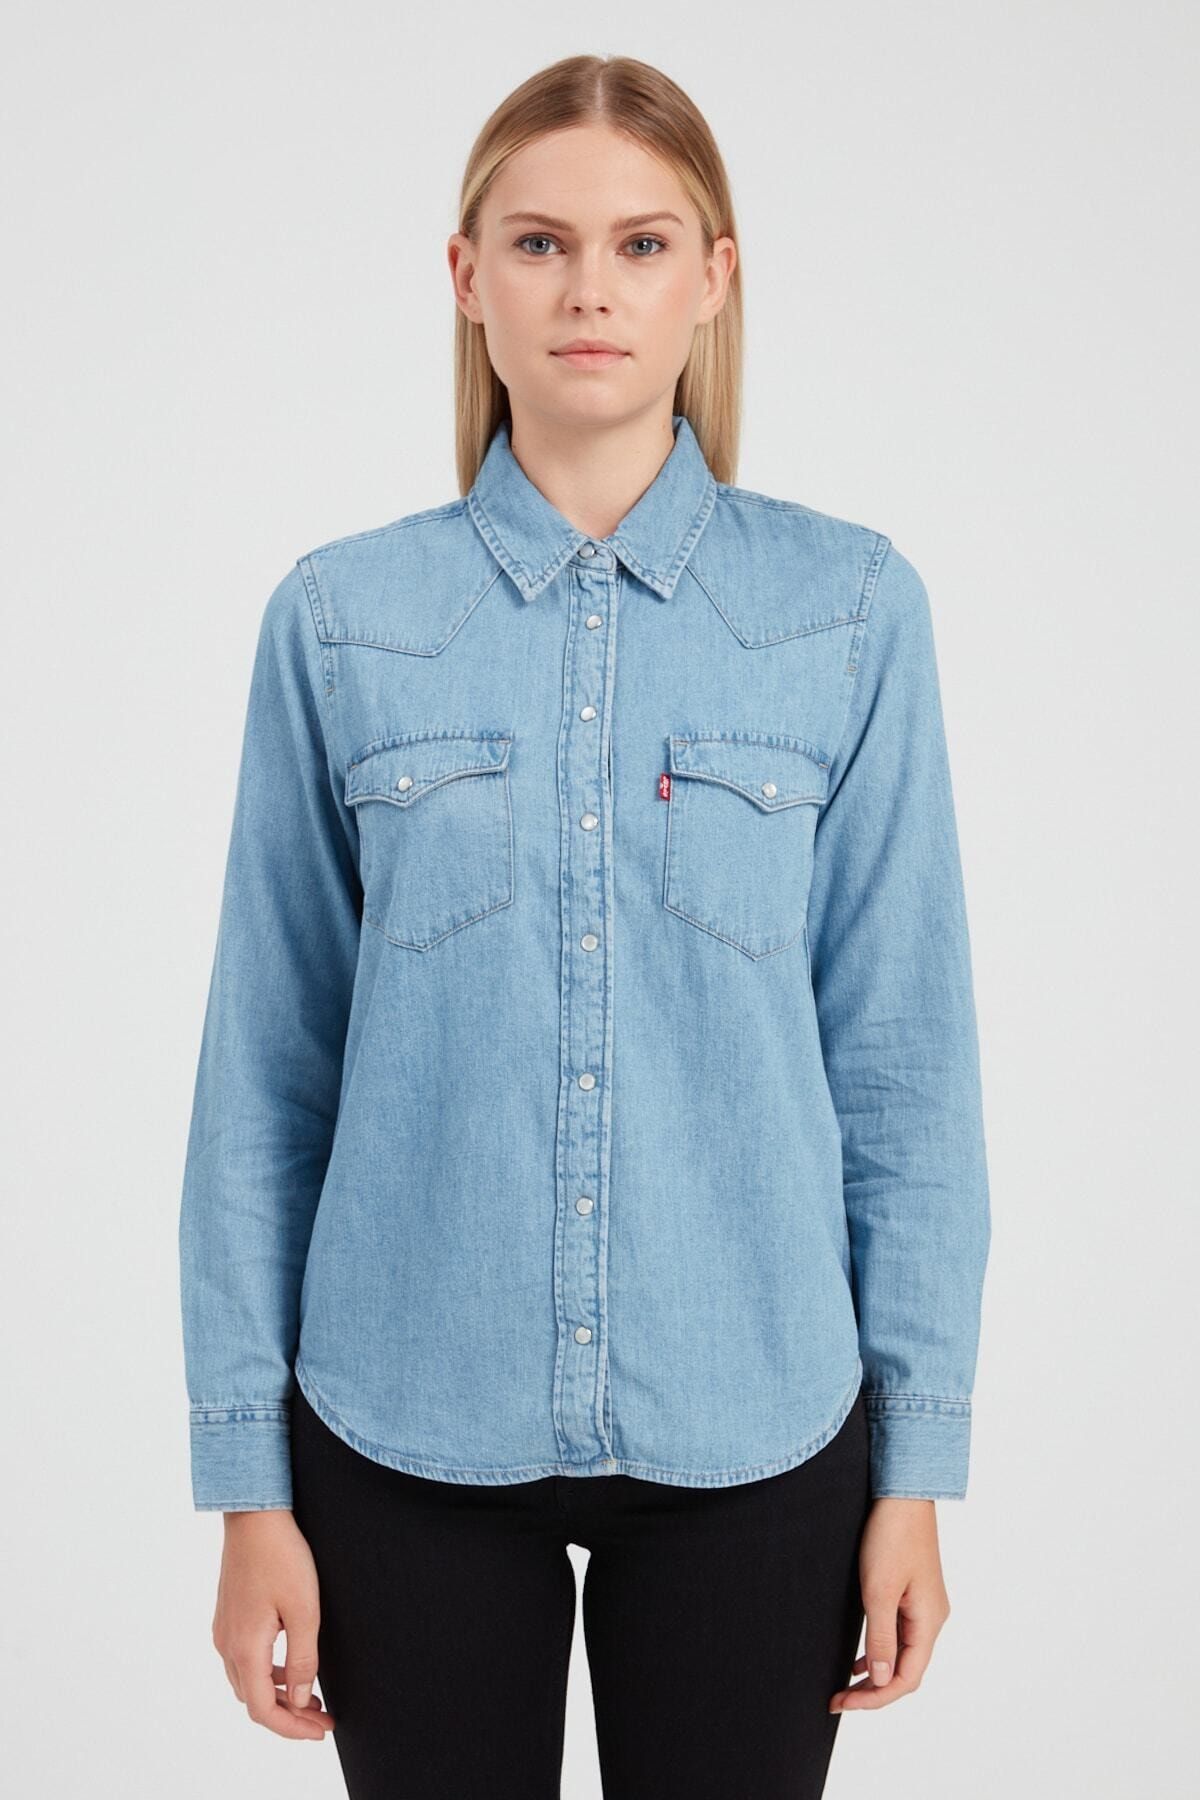 Levi's Kadın Mavi Gömlek 86832-0001